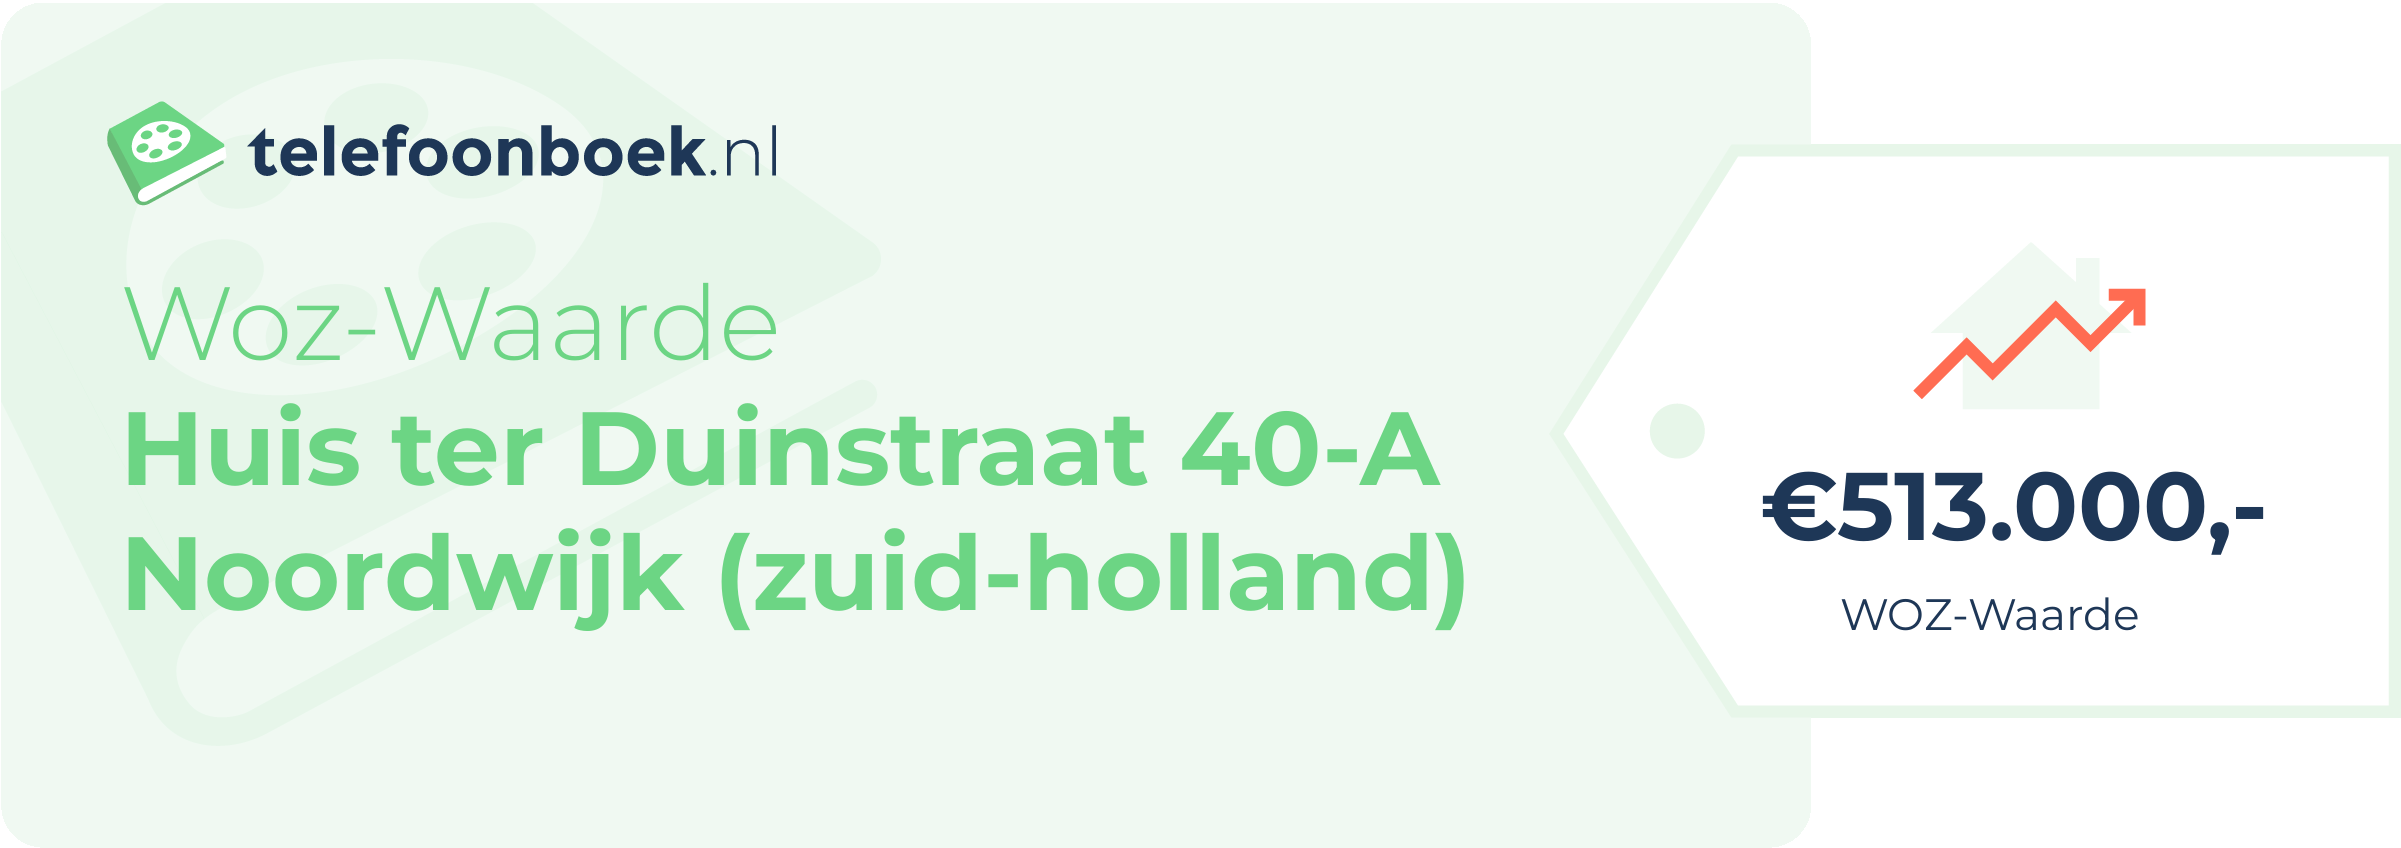 WOZ-waarde Huis Ter Duinstraat 40-A Noordwijk (Zuid-Holland)